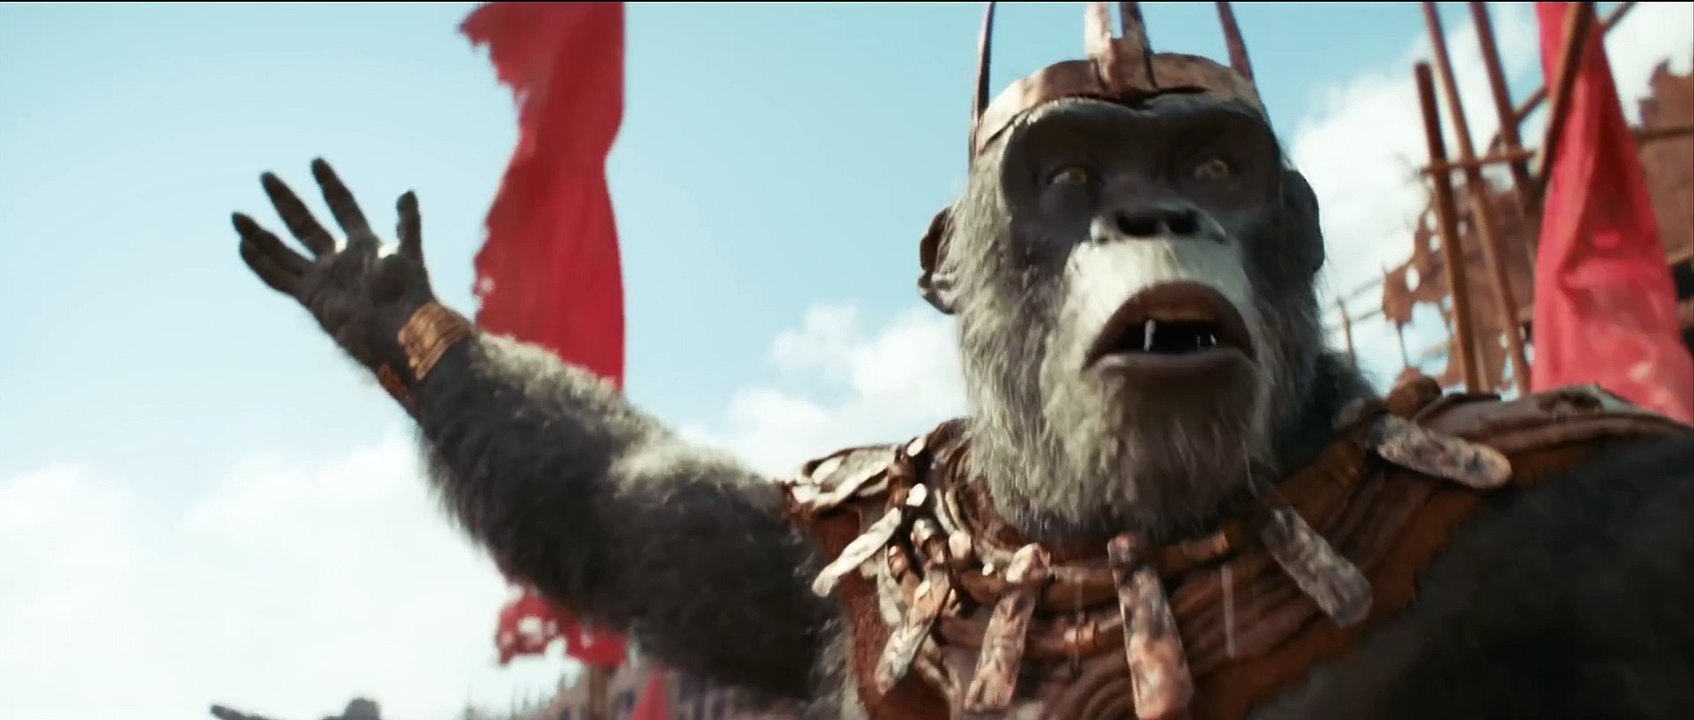 Planet der Affen 4: New Kingdom Trailer (4) OV